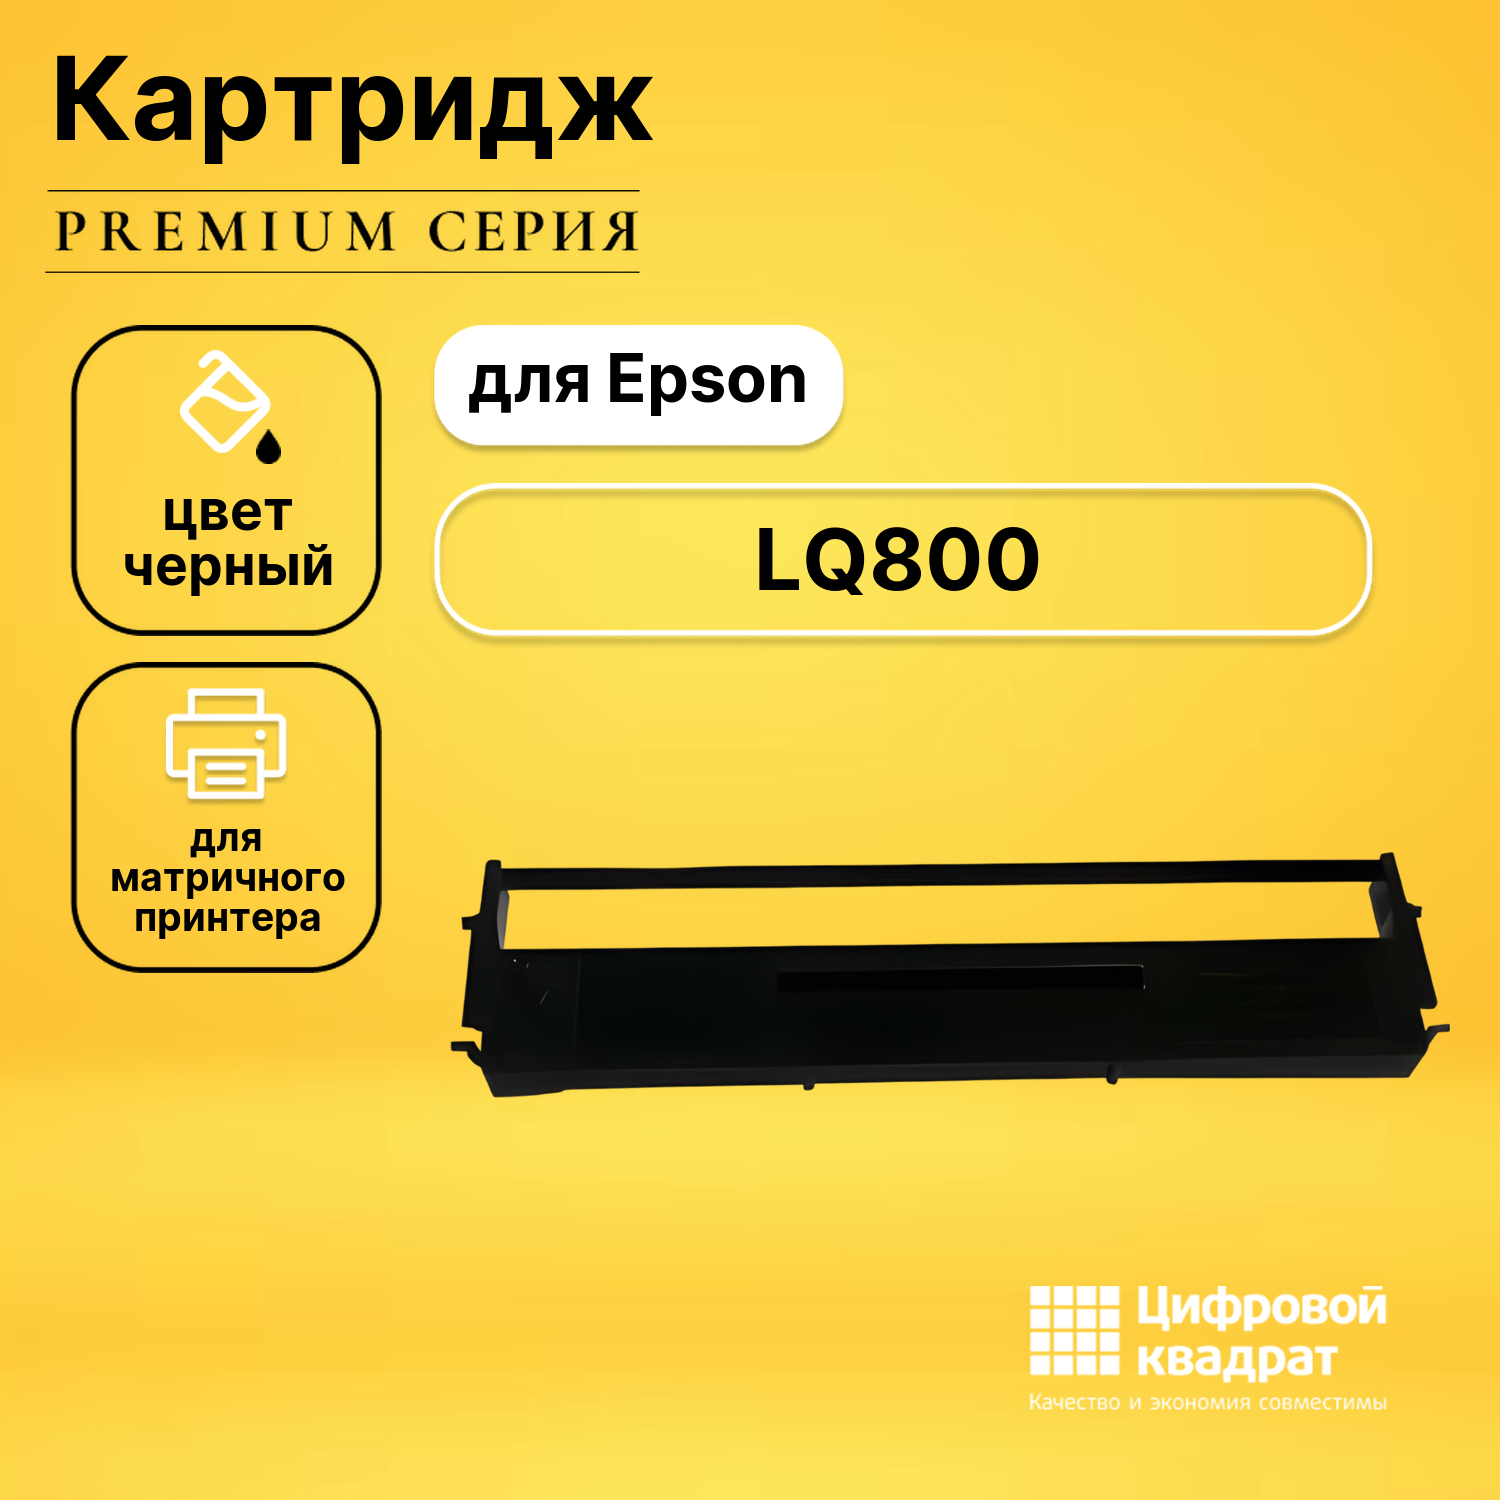 Риббон-картридж DS LQ800 Epson черный совместимый